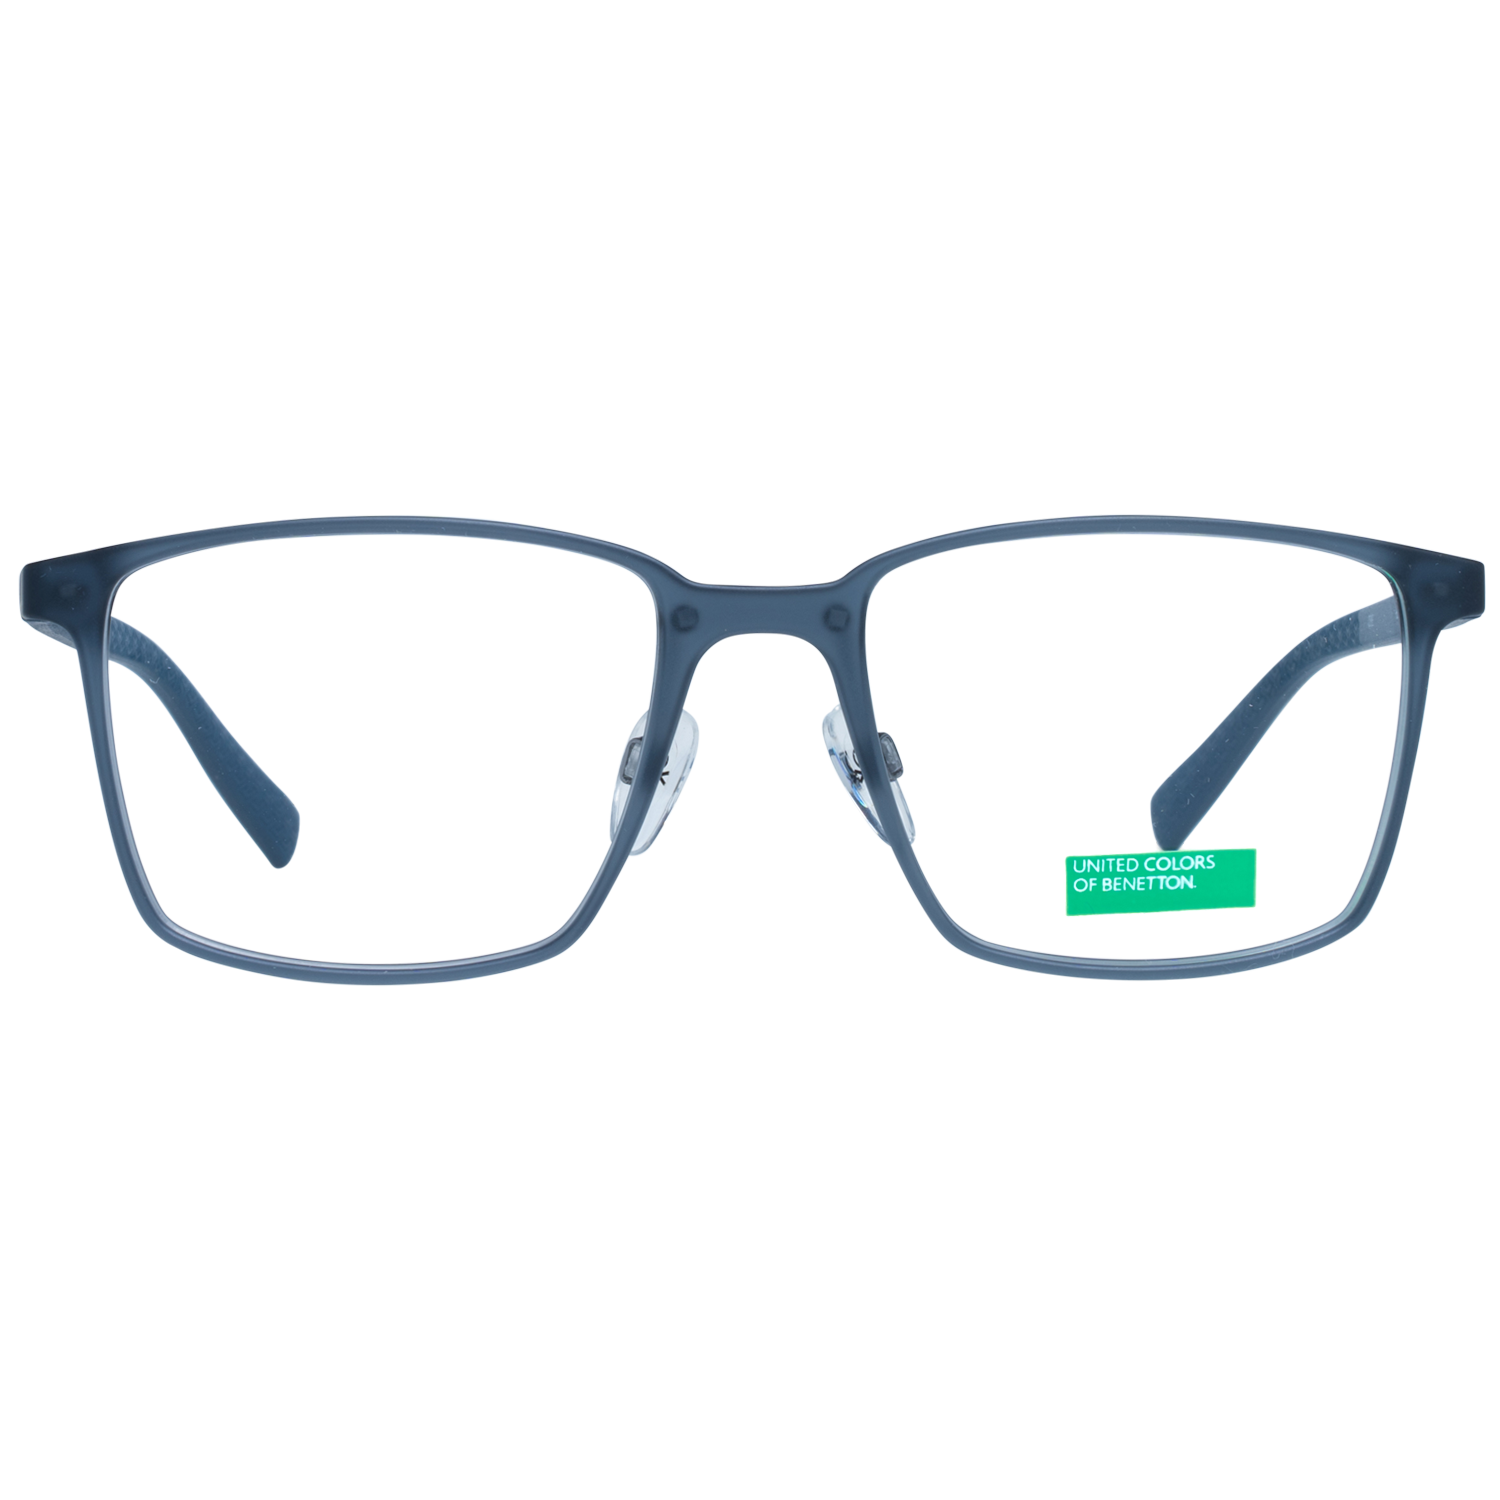 Benetton Frames Benetton Glasses Frames BEO1009 921 53 Eyeglasses Eyewear UK USA Australia 